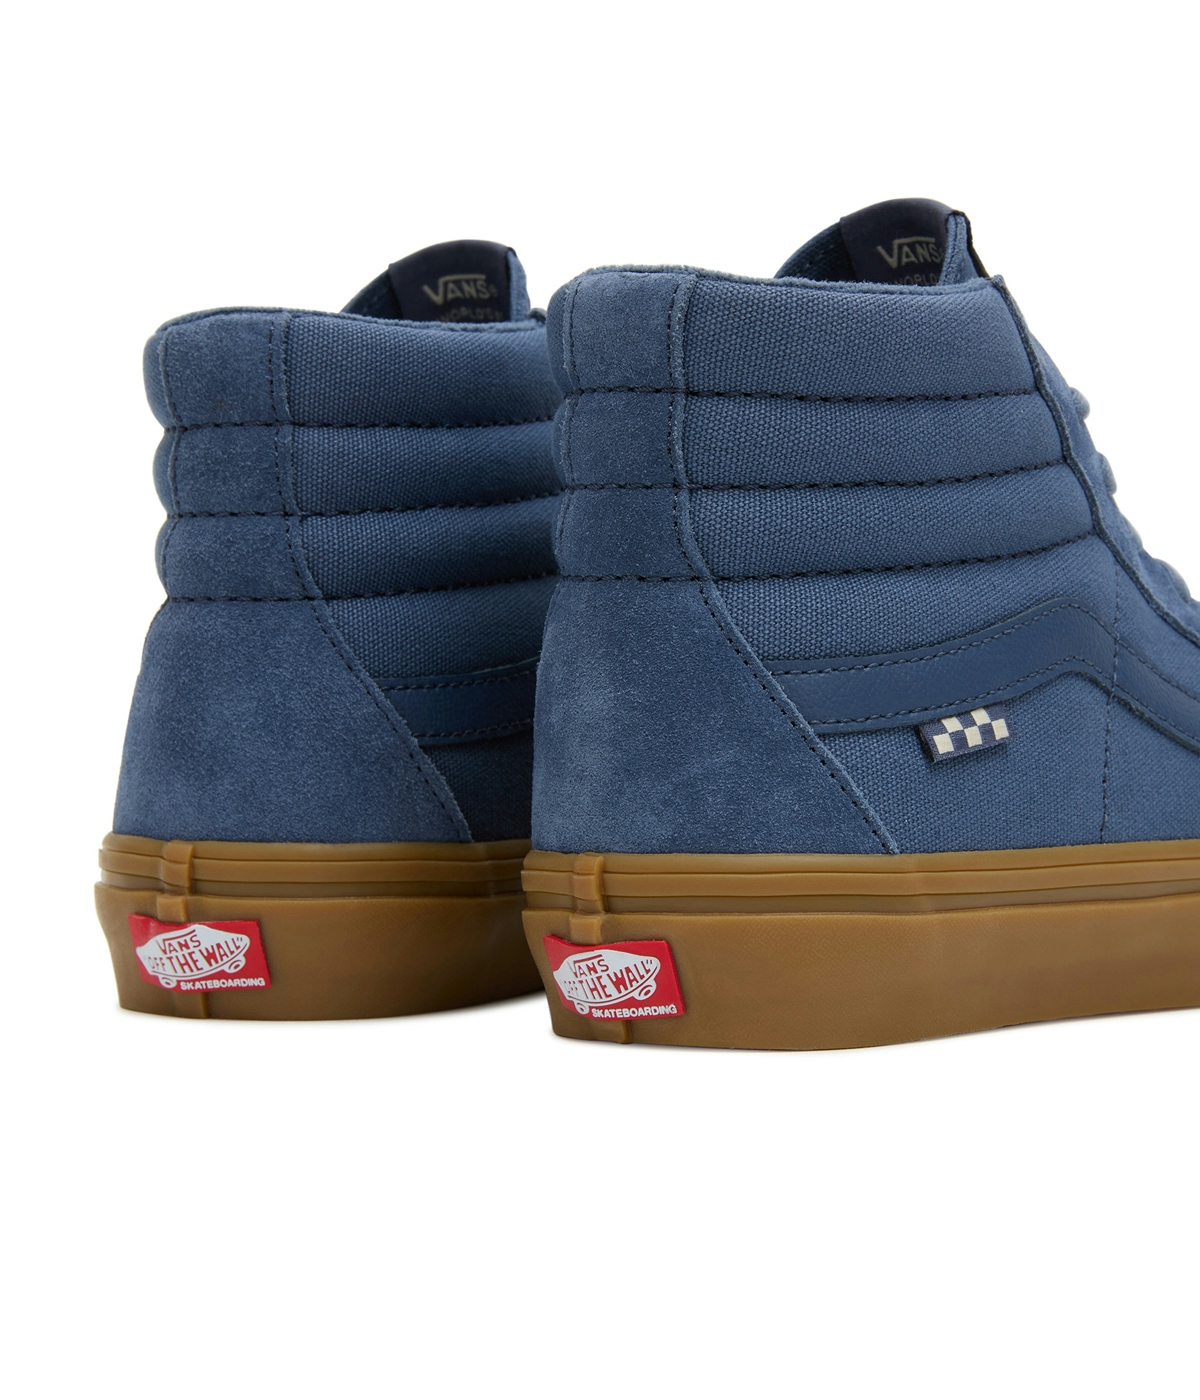 Vans SK8-Hi Vintage Shoes Dark Blue/Gum 4